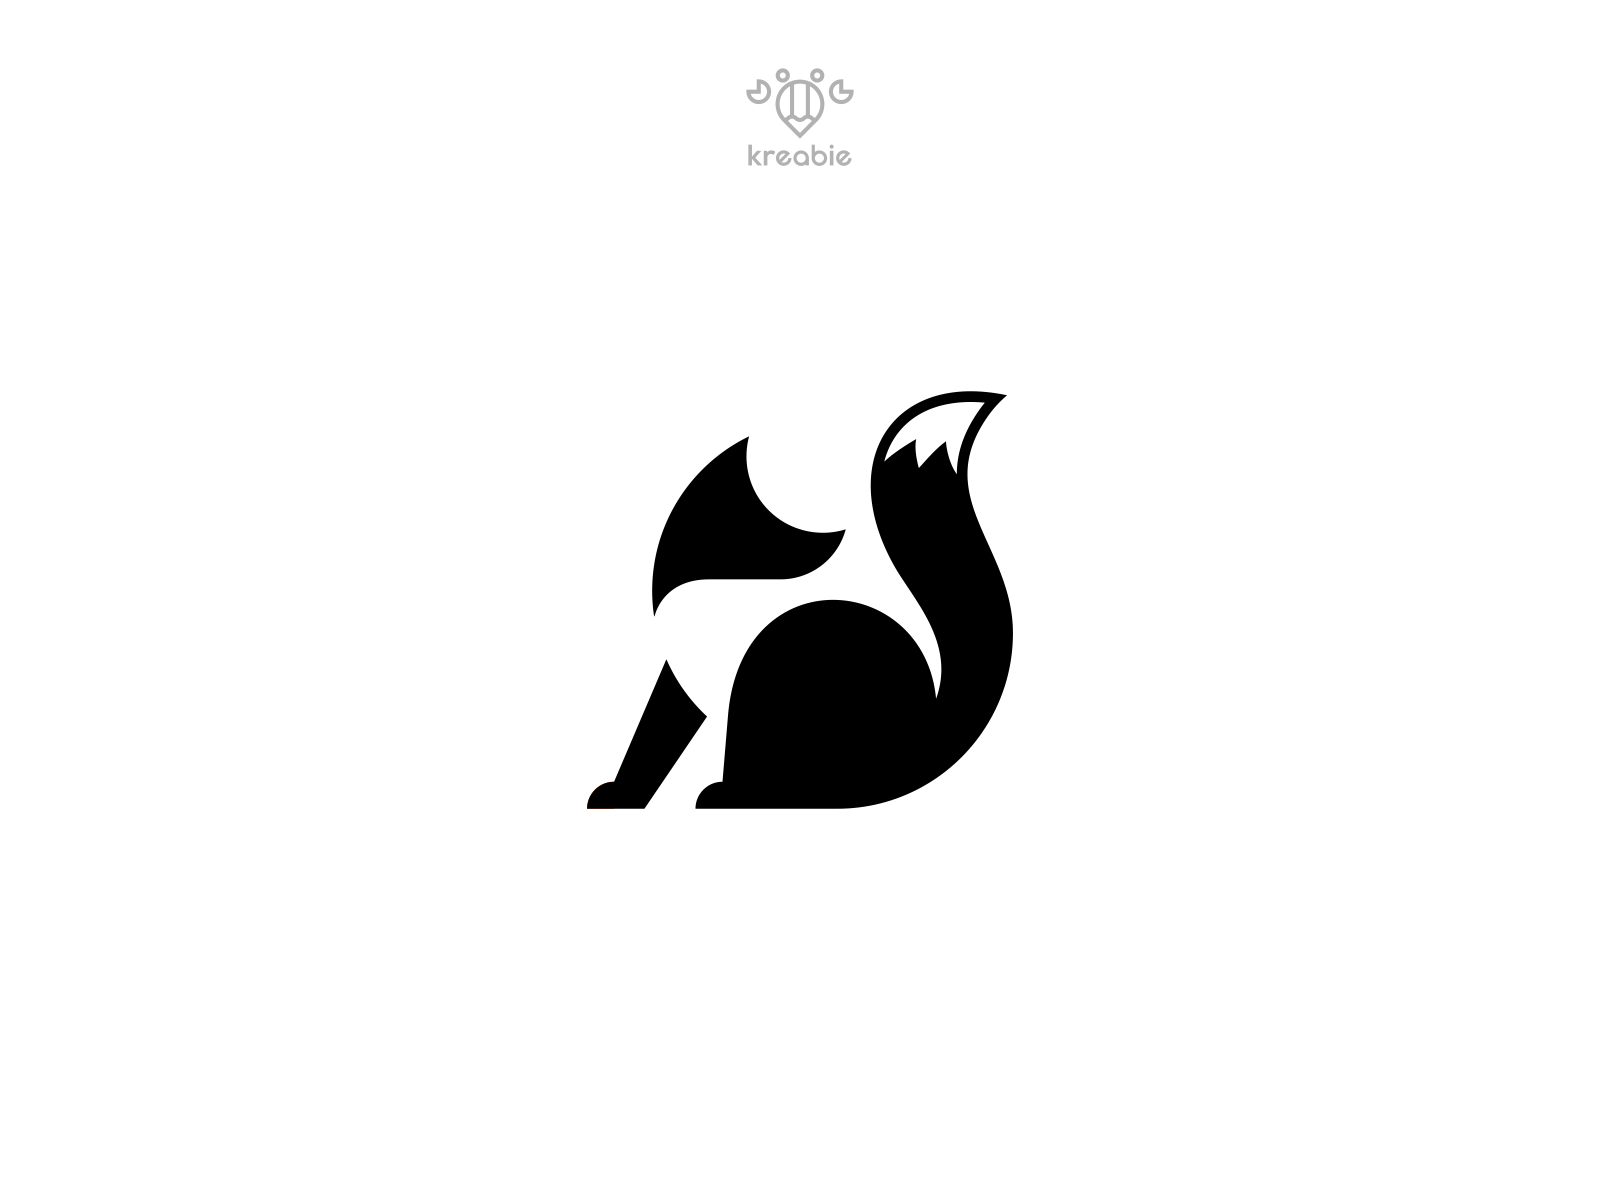 Fox - Logo Design by Kreabie on Dribbble